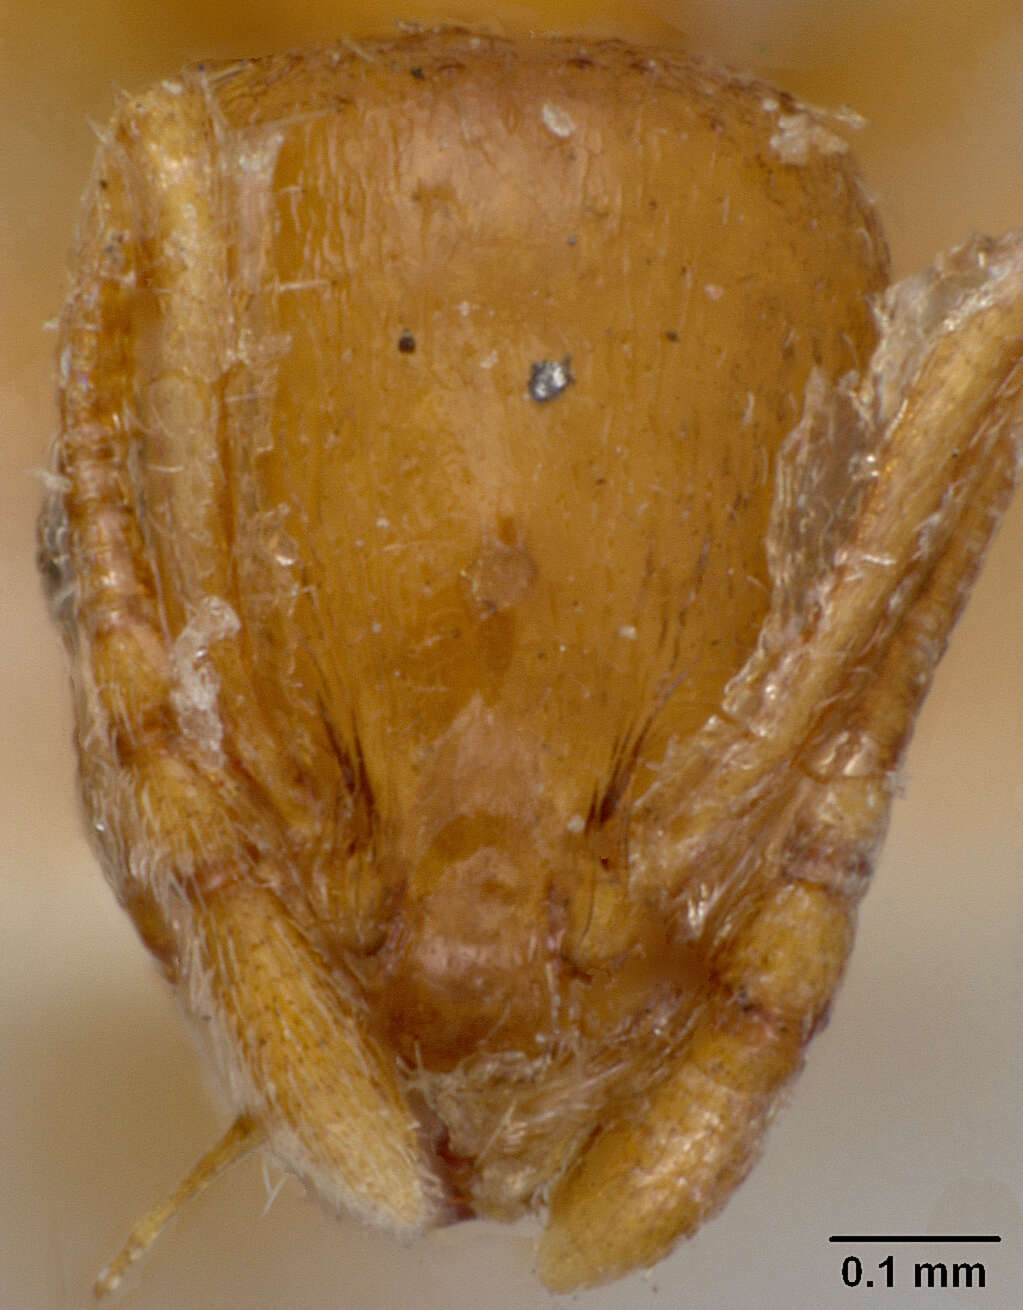 Image of <i>Leptothorax tuberum tebessae</i>